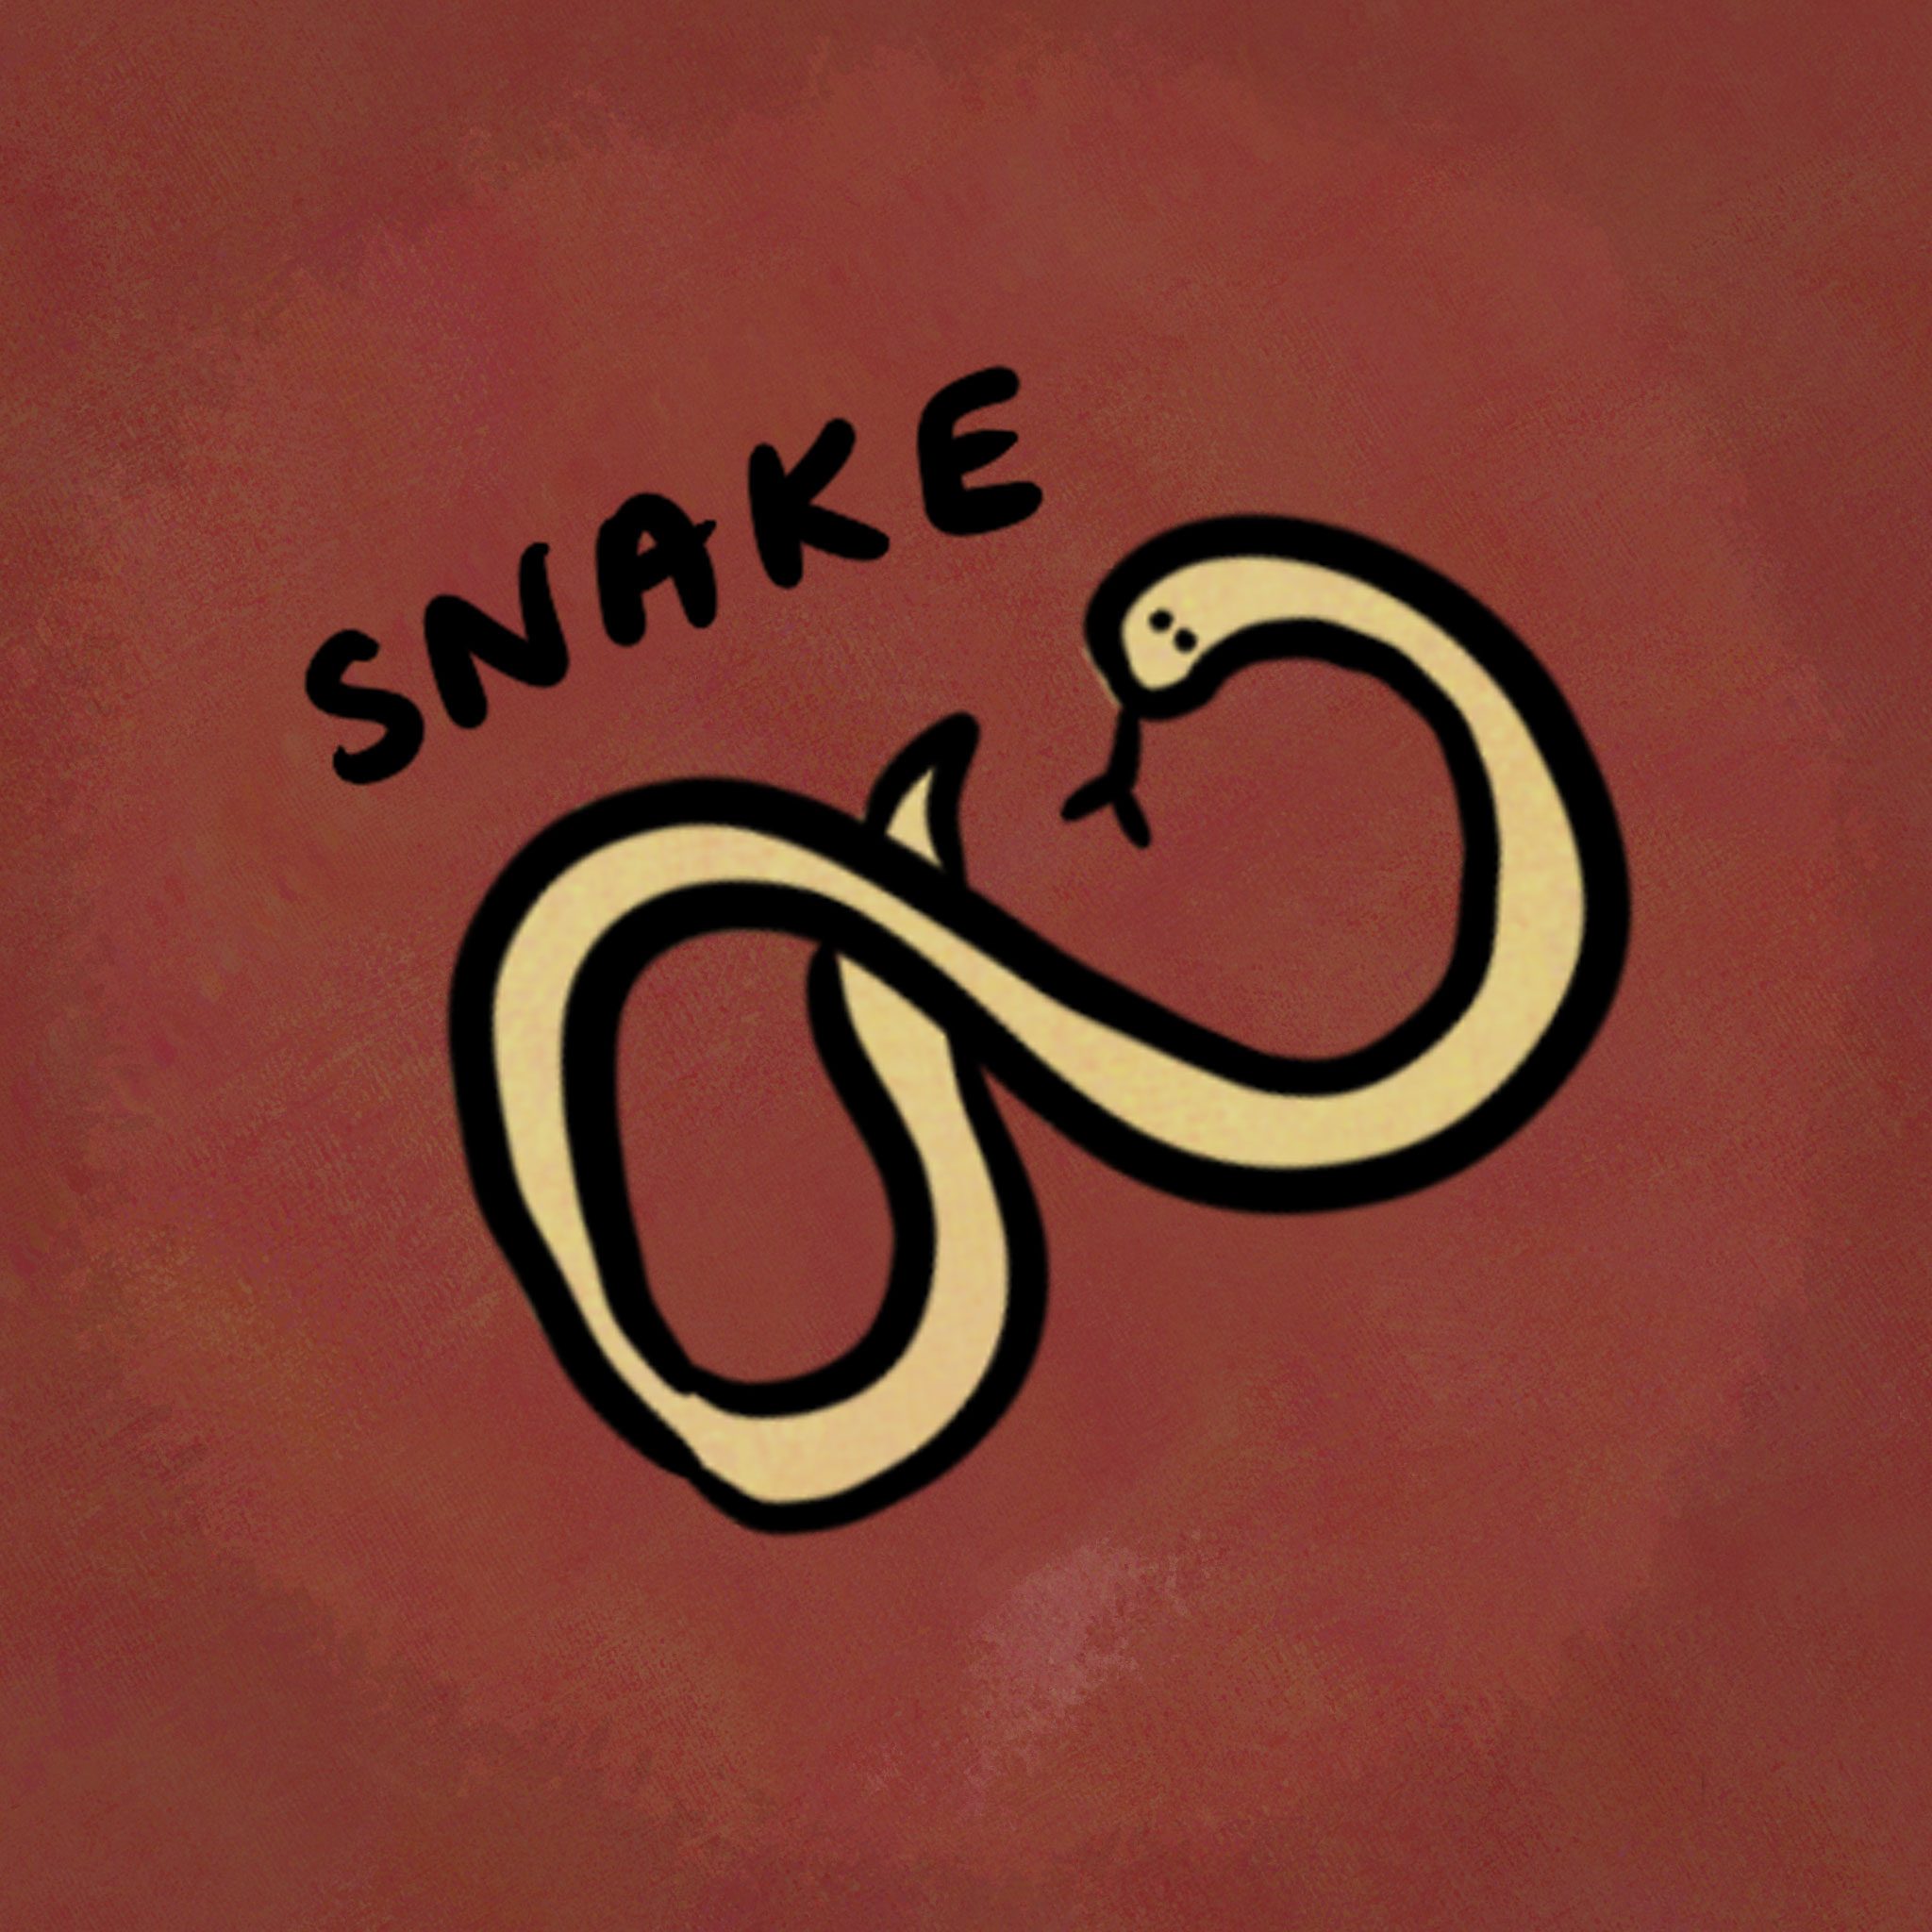 Horóscopo chino ilustración animal: serpiente